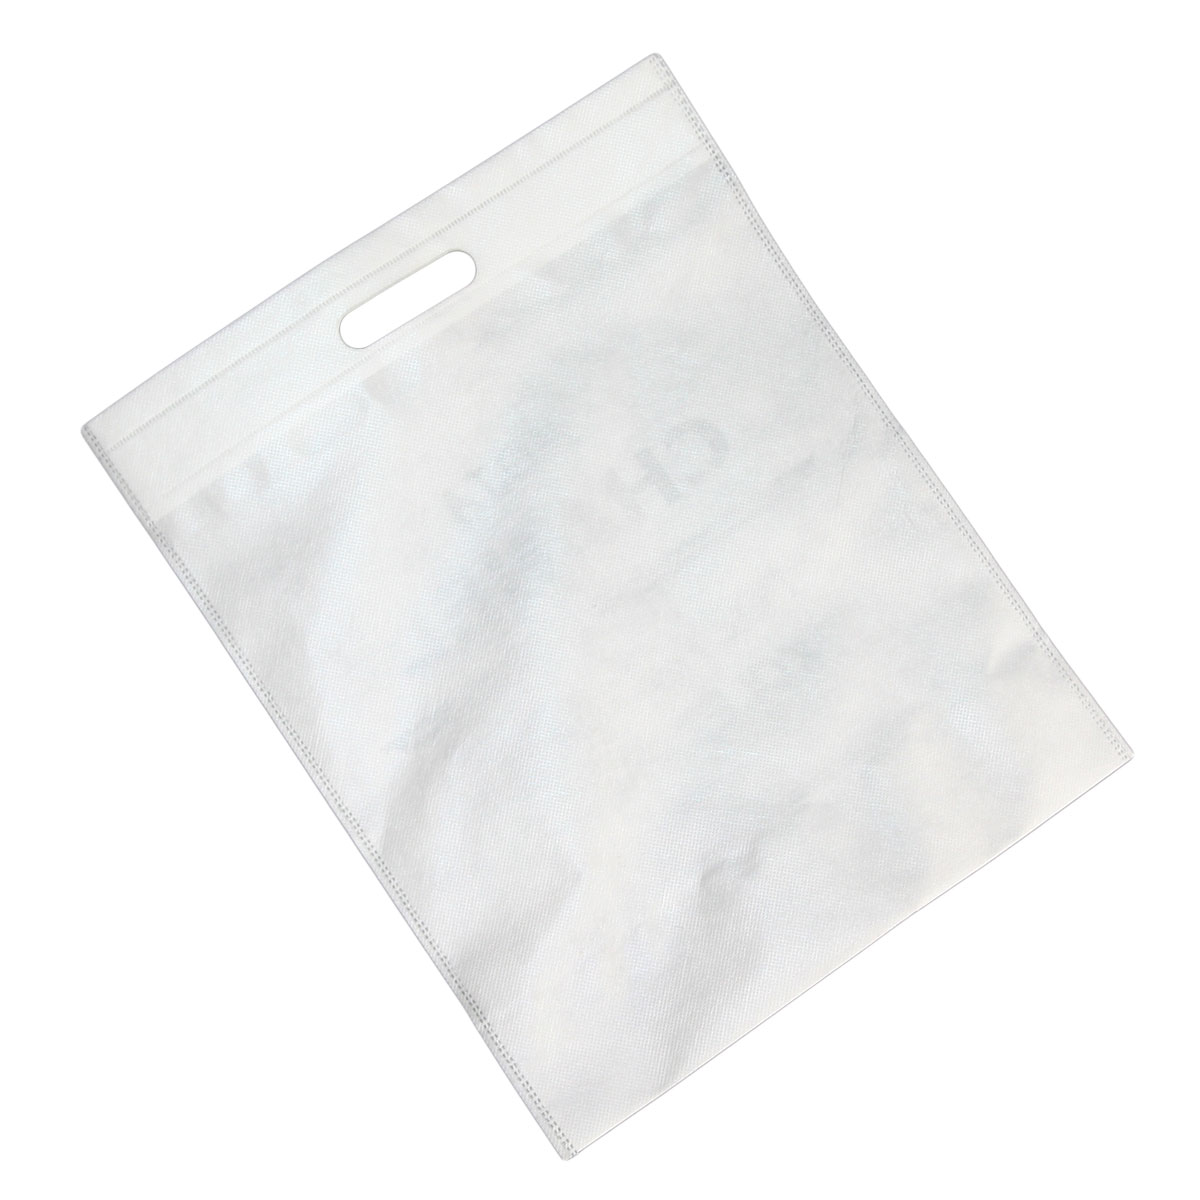 Biała torba ekologiczna na zakupy do sublimacji z wyciętymi uszami - 10 sztuk